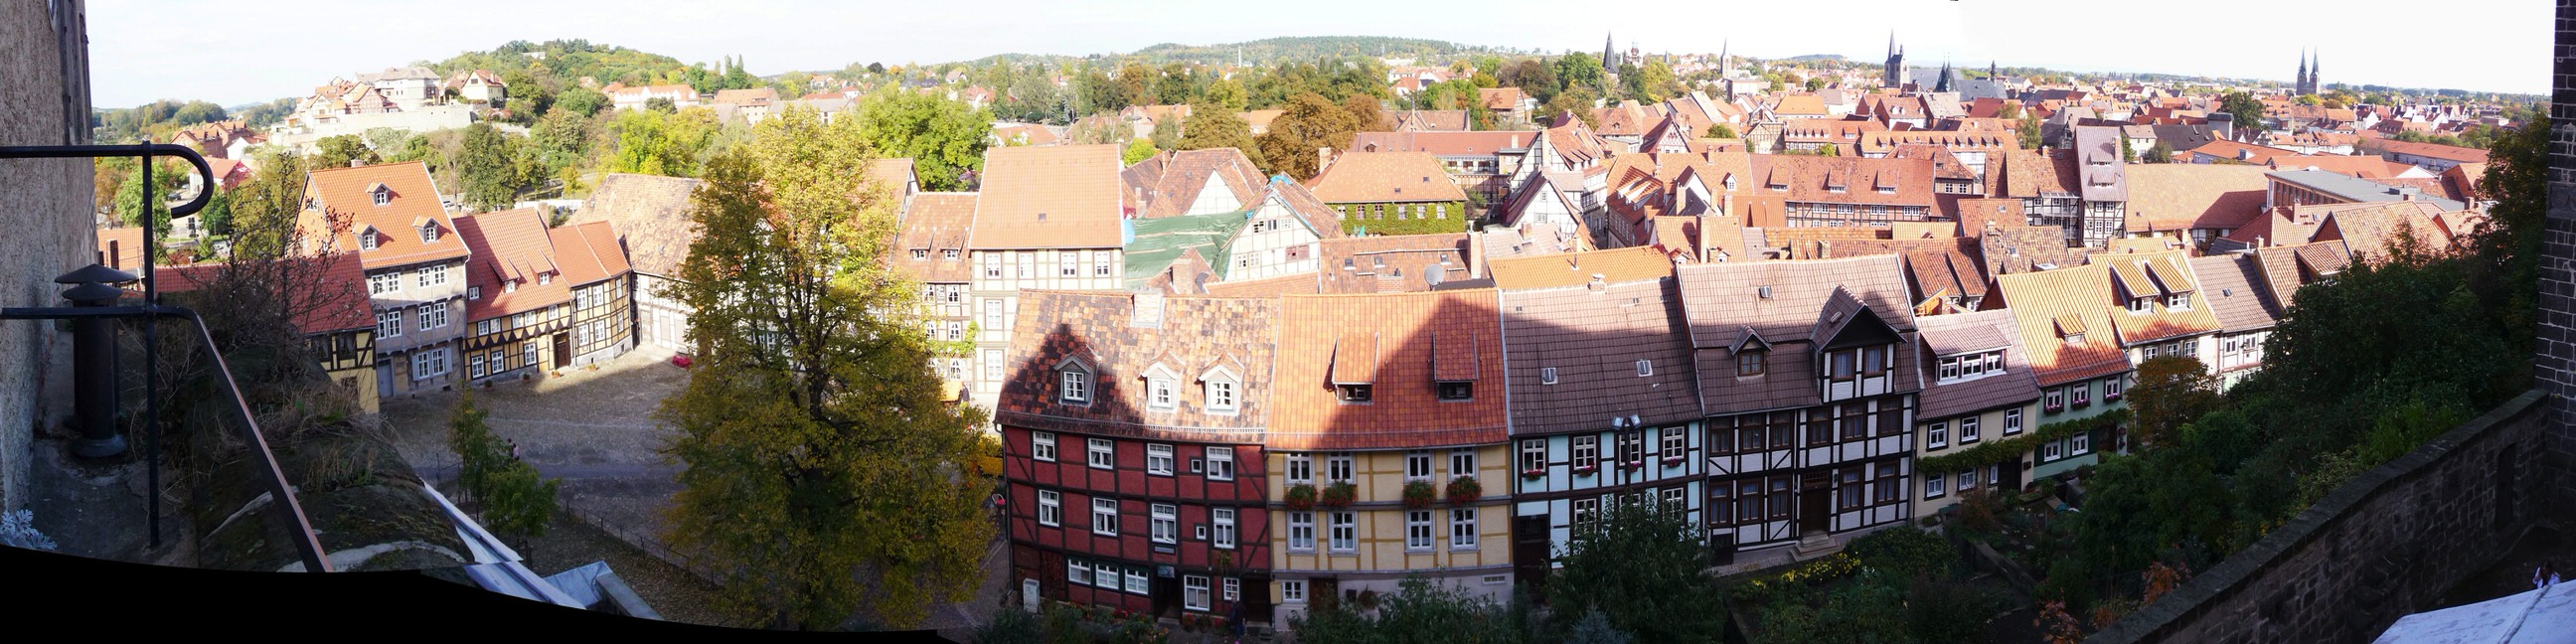 Quedlinburg II